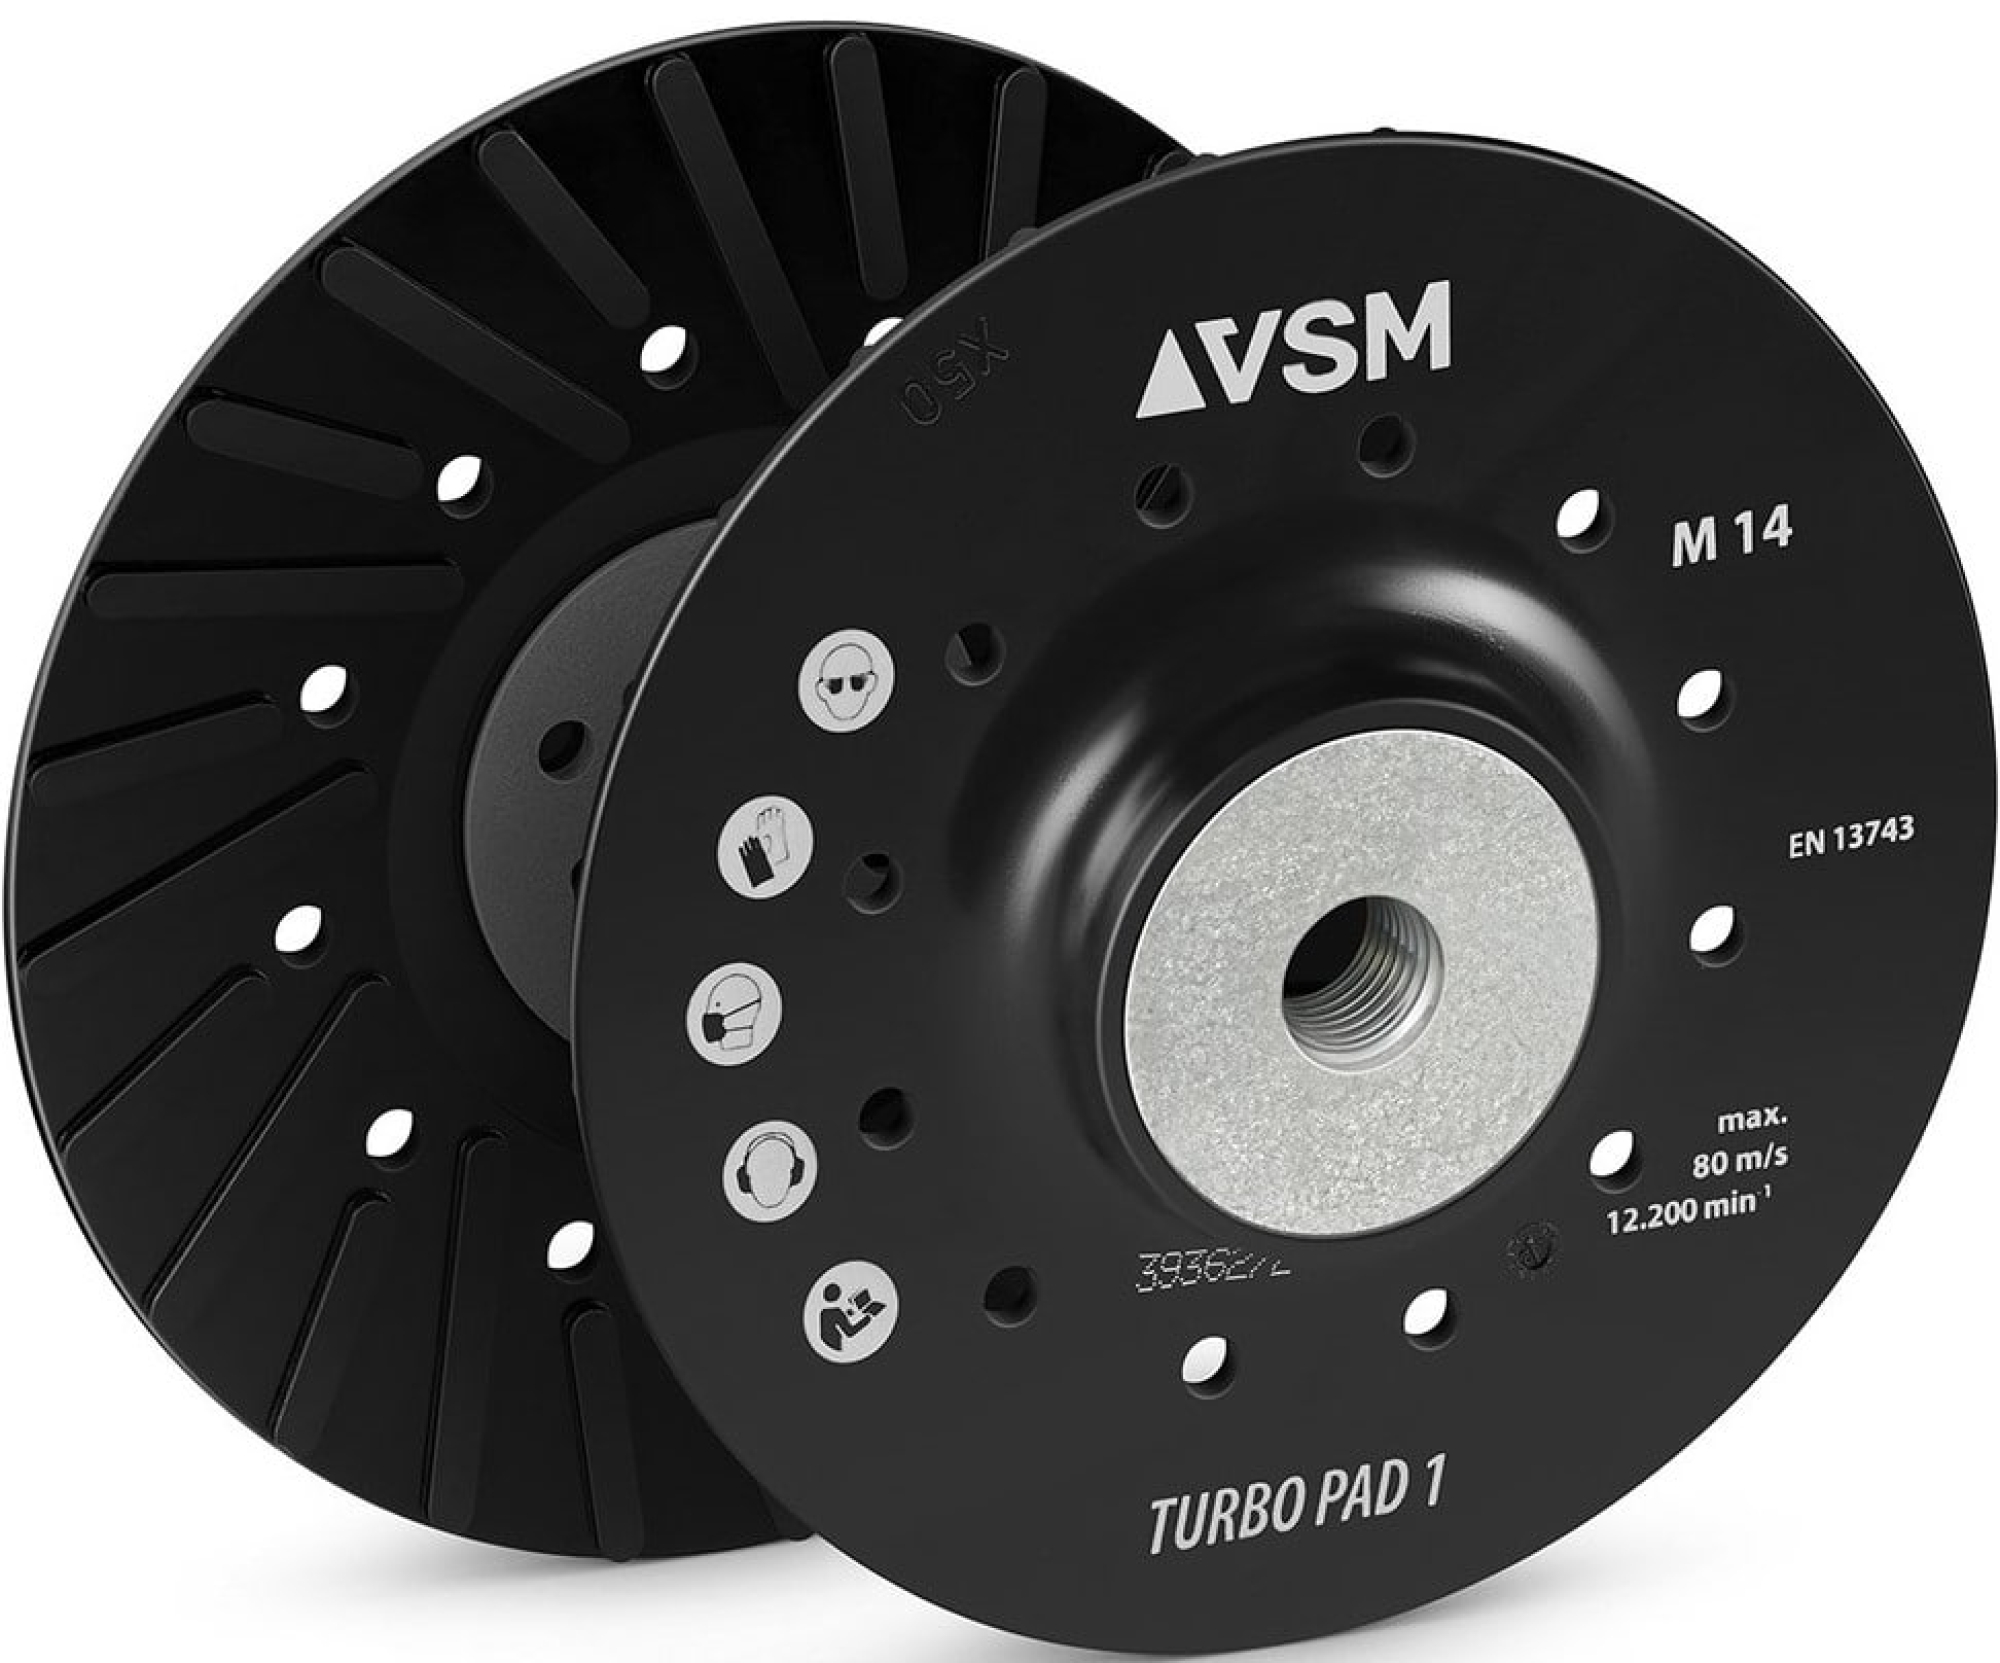 VSM TURBO PAD 1 731303, Ø 125 mm, M14 Gewinde, Schwarz, Hart, Stützteller mit Kühlrippen für Fiberscheibenscheiben mit Ø 22 mm Zentrieransatz für den VSM Winkelschleifer